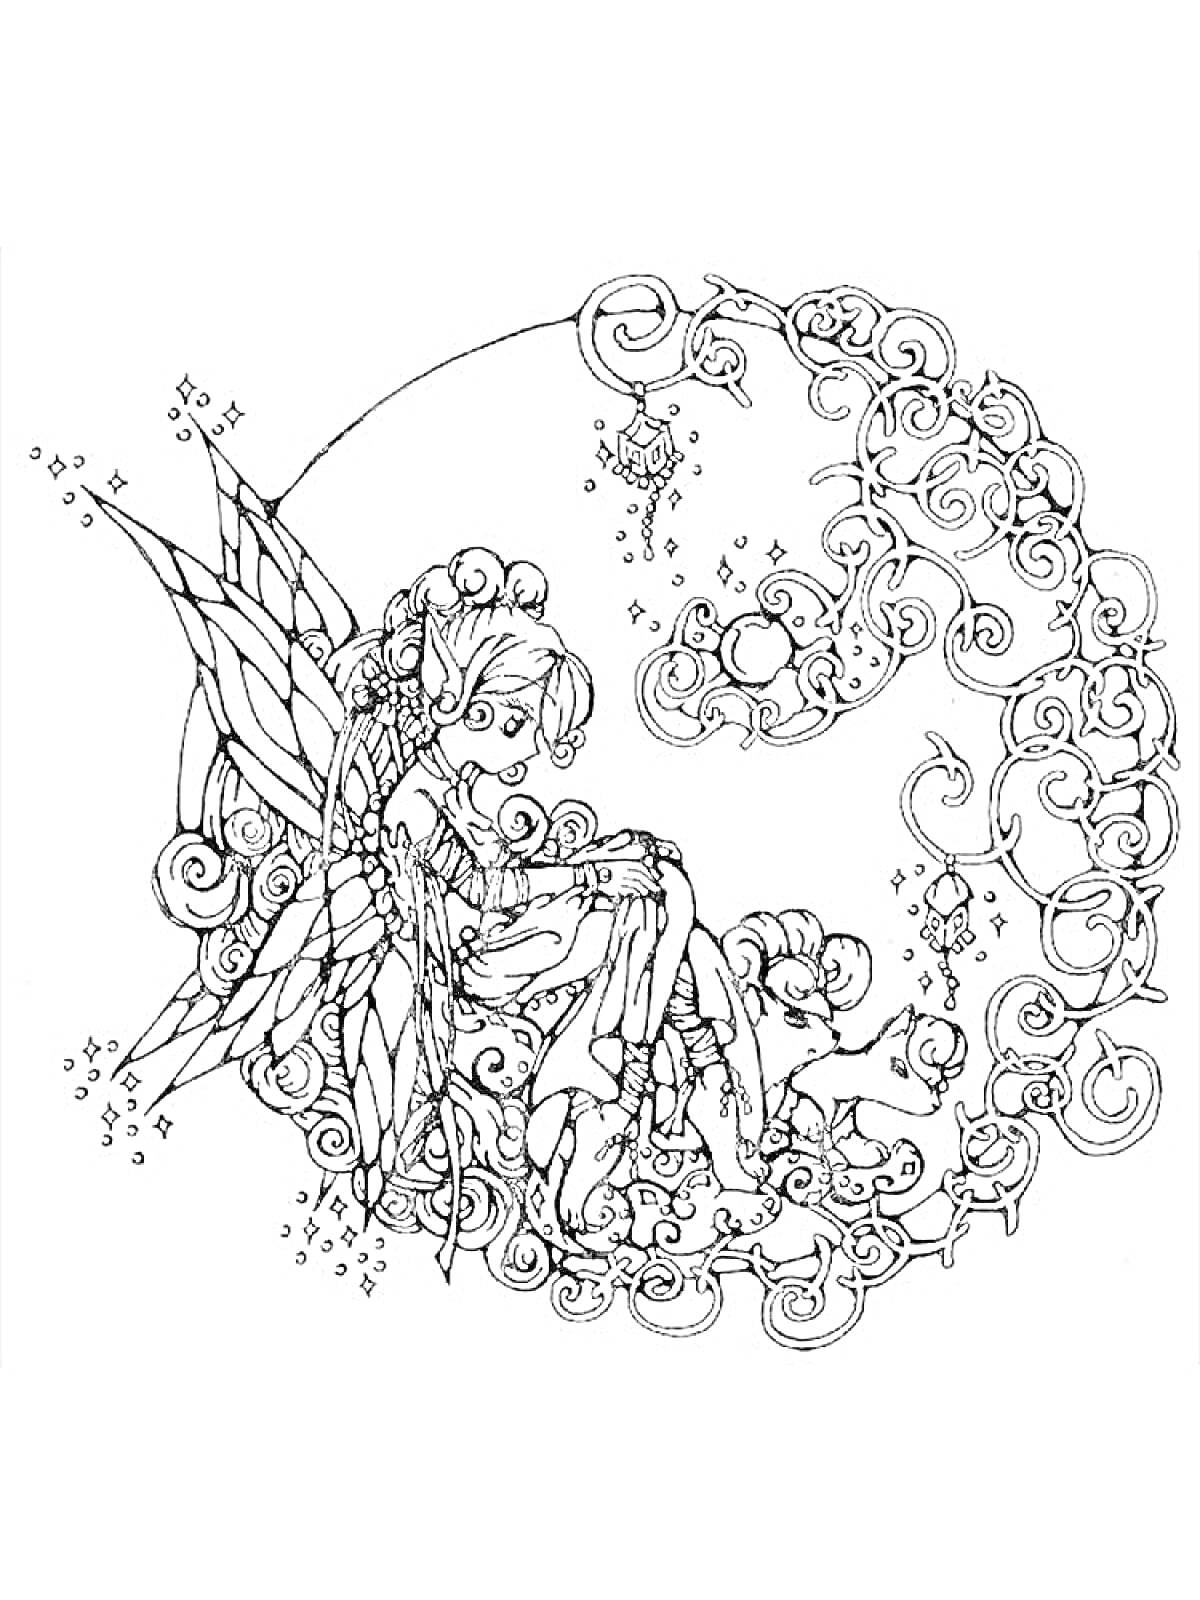 Раскраска Аниме фея сидящая на изогнутой ветке с завитками и бабочками, с длинными крыльями, ночными светильниками и музыкальными нотами вокруг.